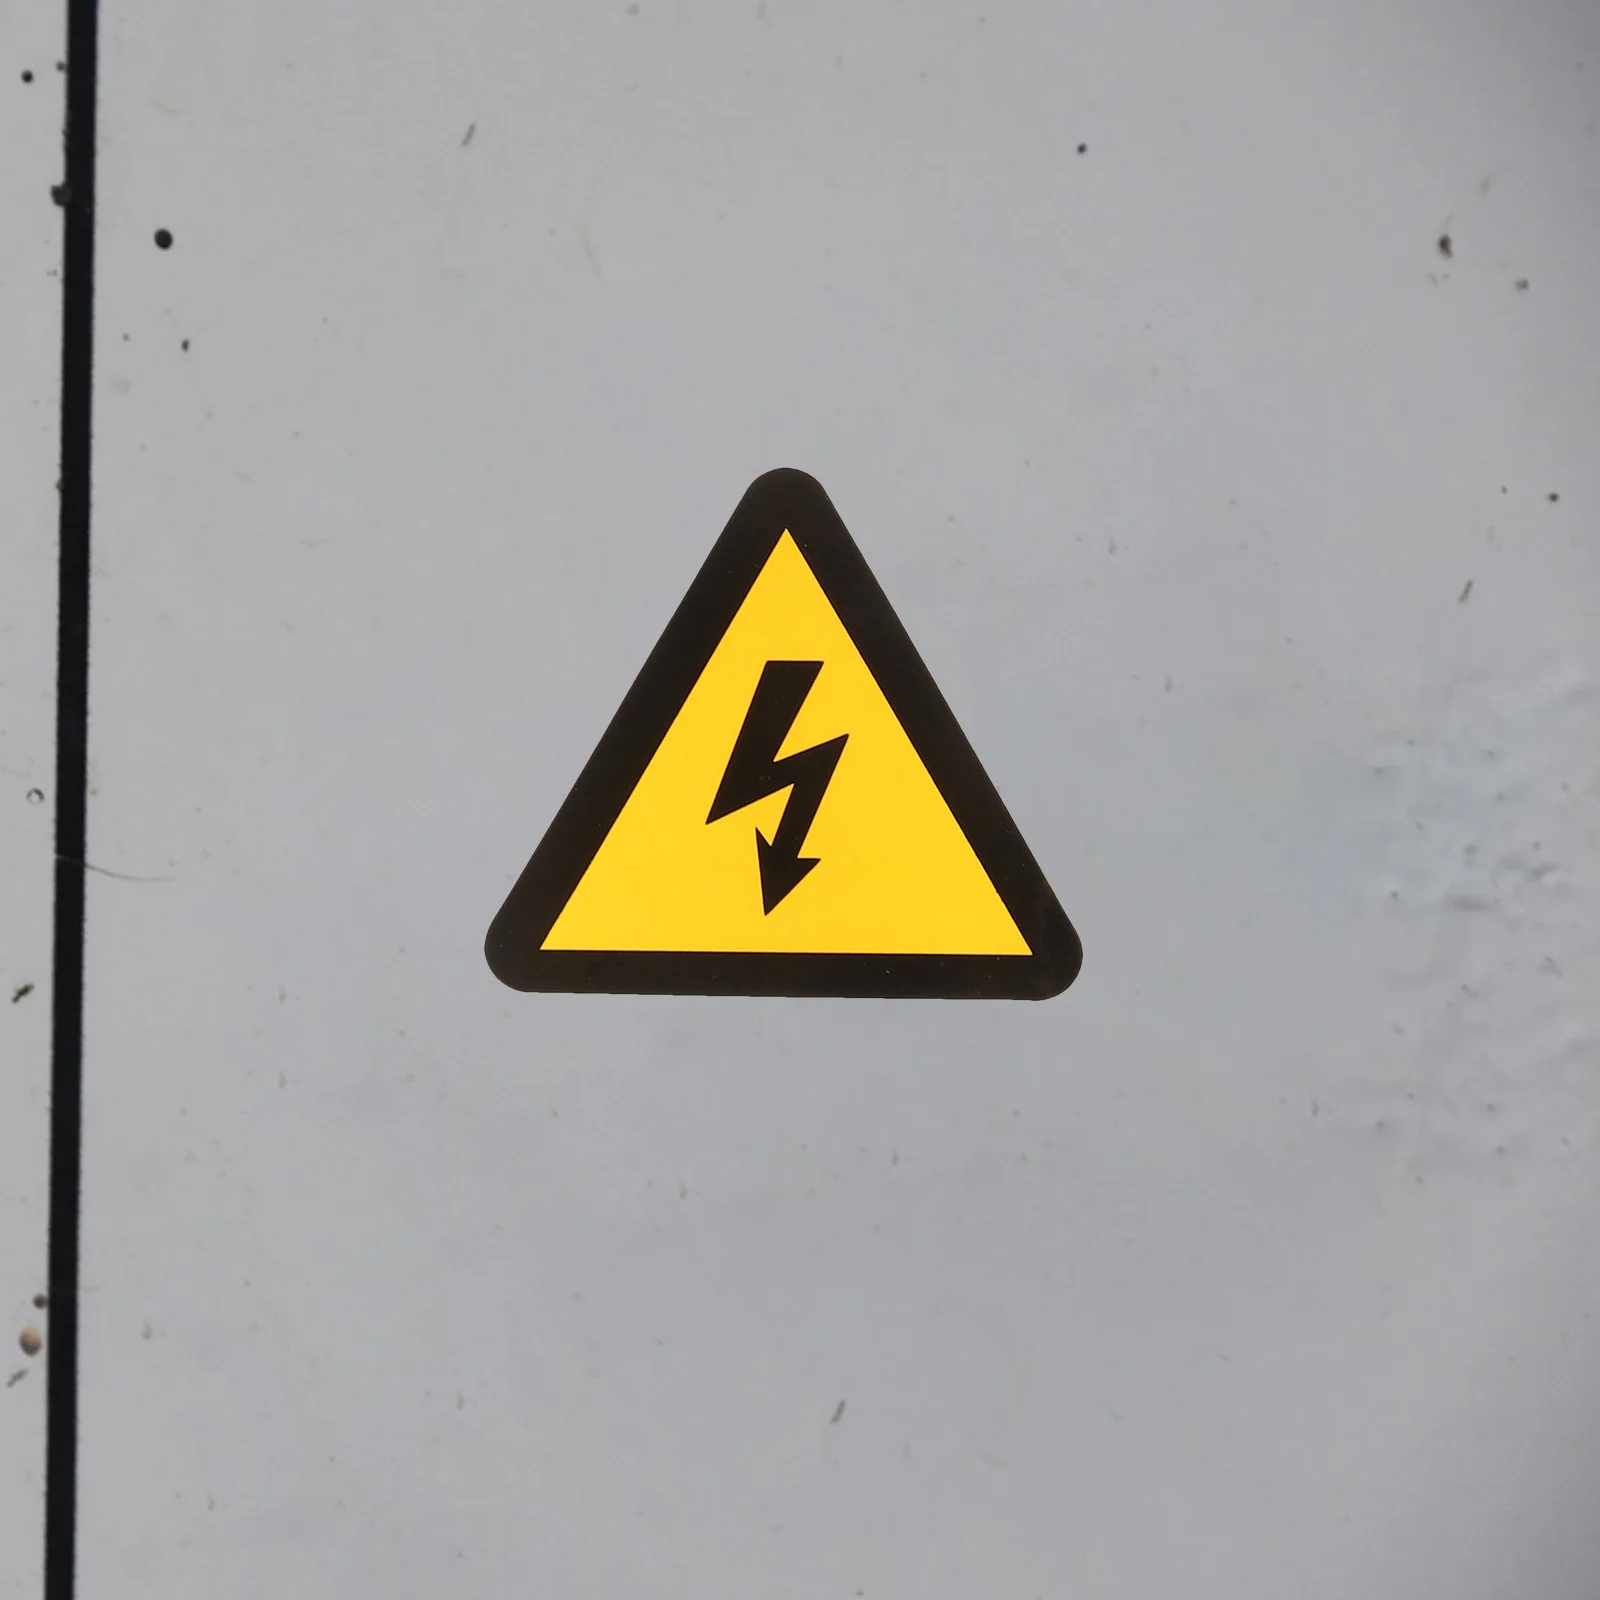 Желтые наклейки Tofficu, опасность поражения электрическим током, Виниловая наклейка с высоким напряжением, поражение электрическим током Отключите питание Перед - 3